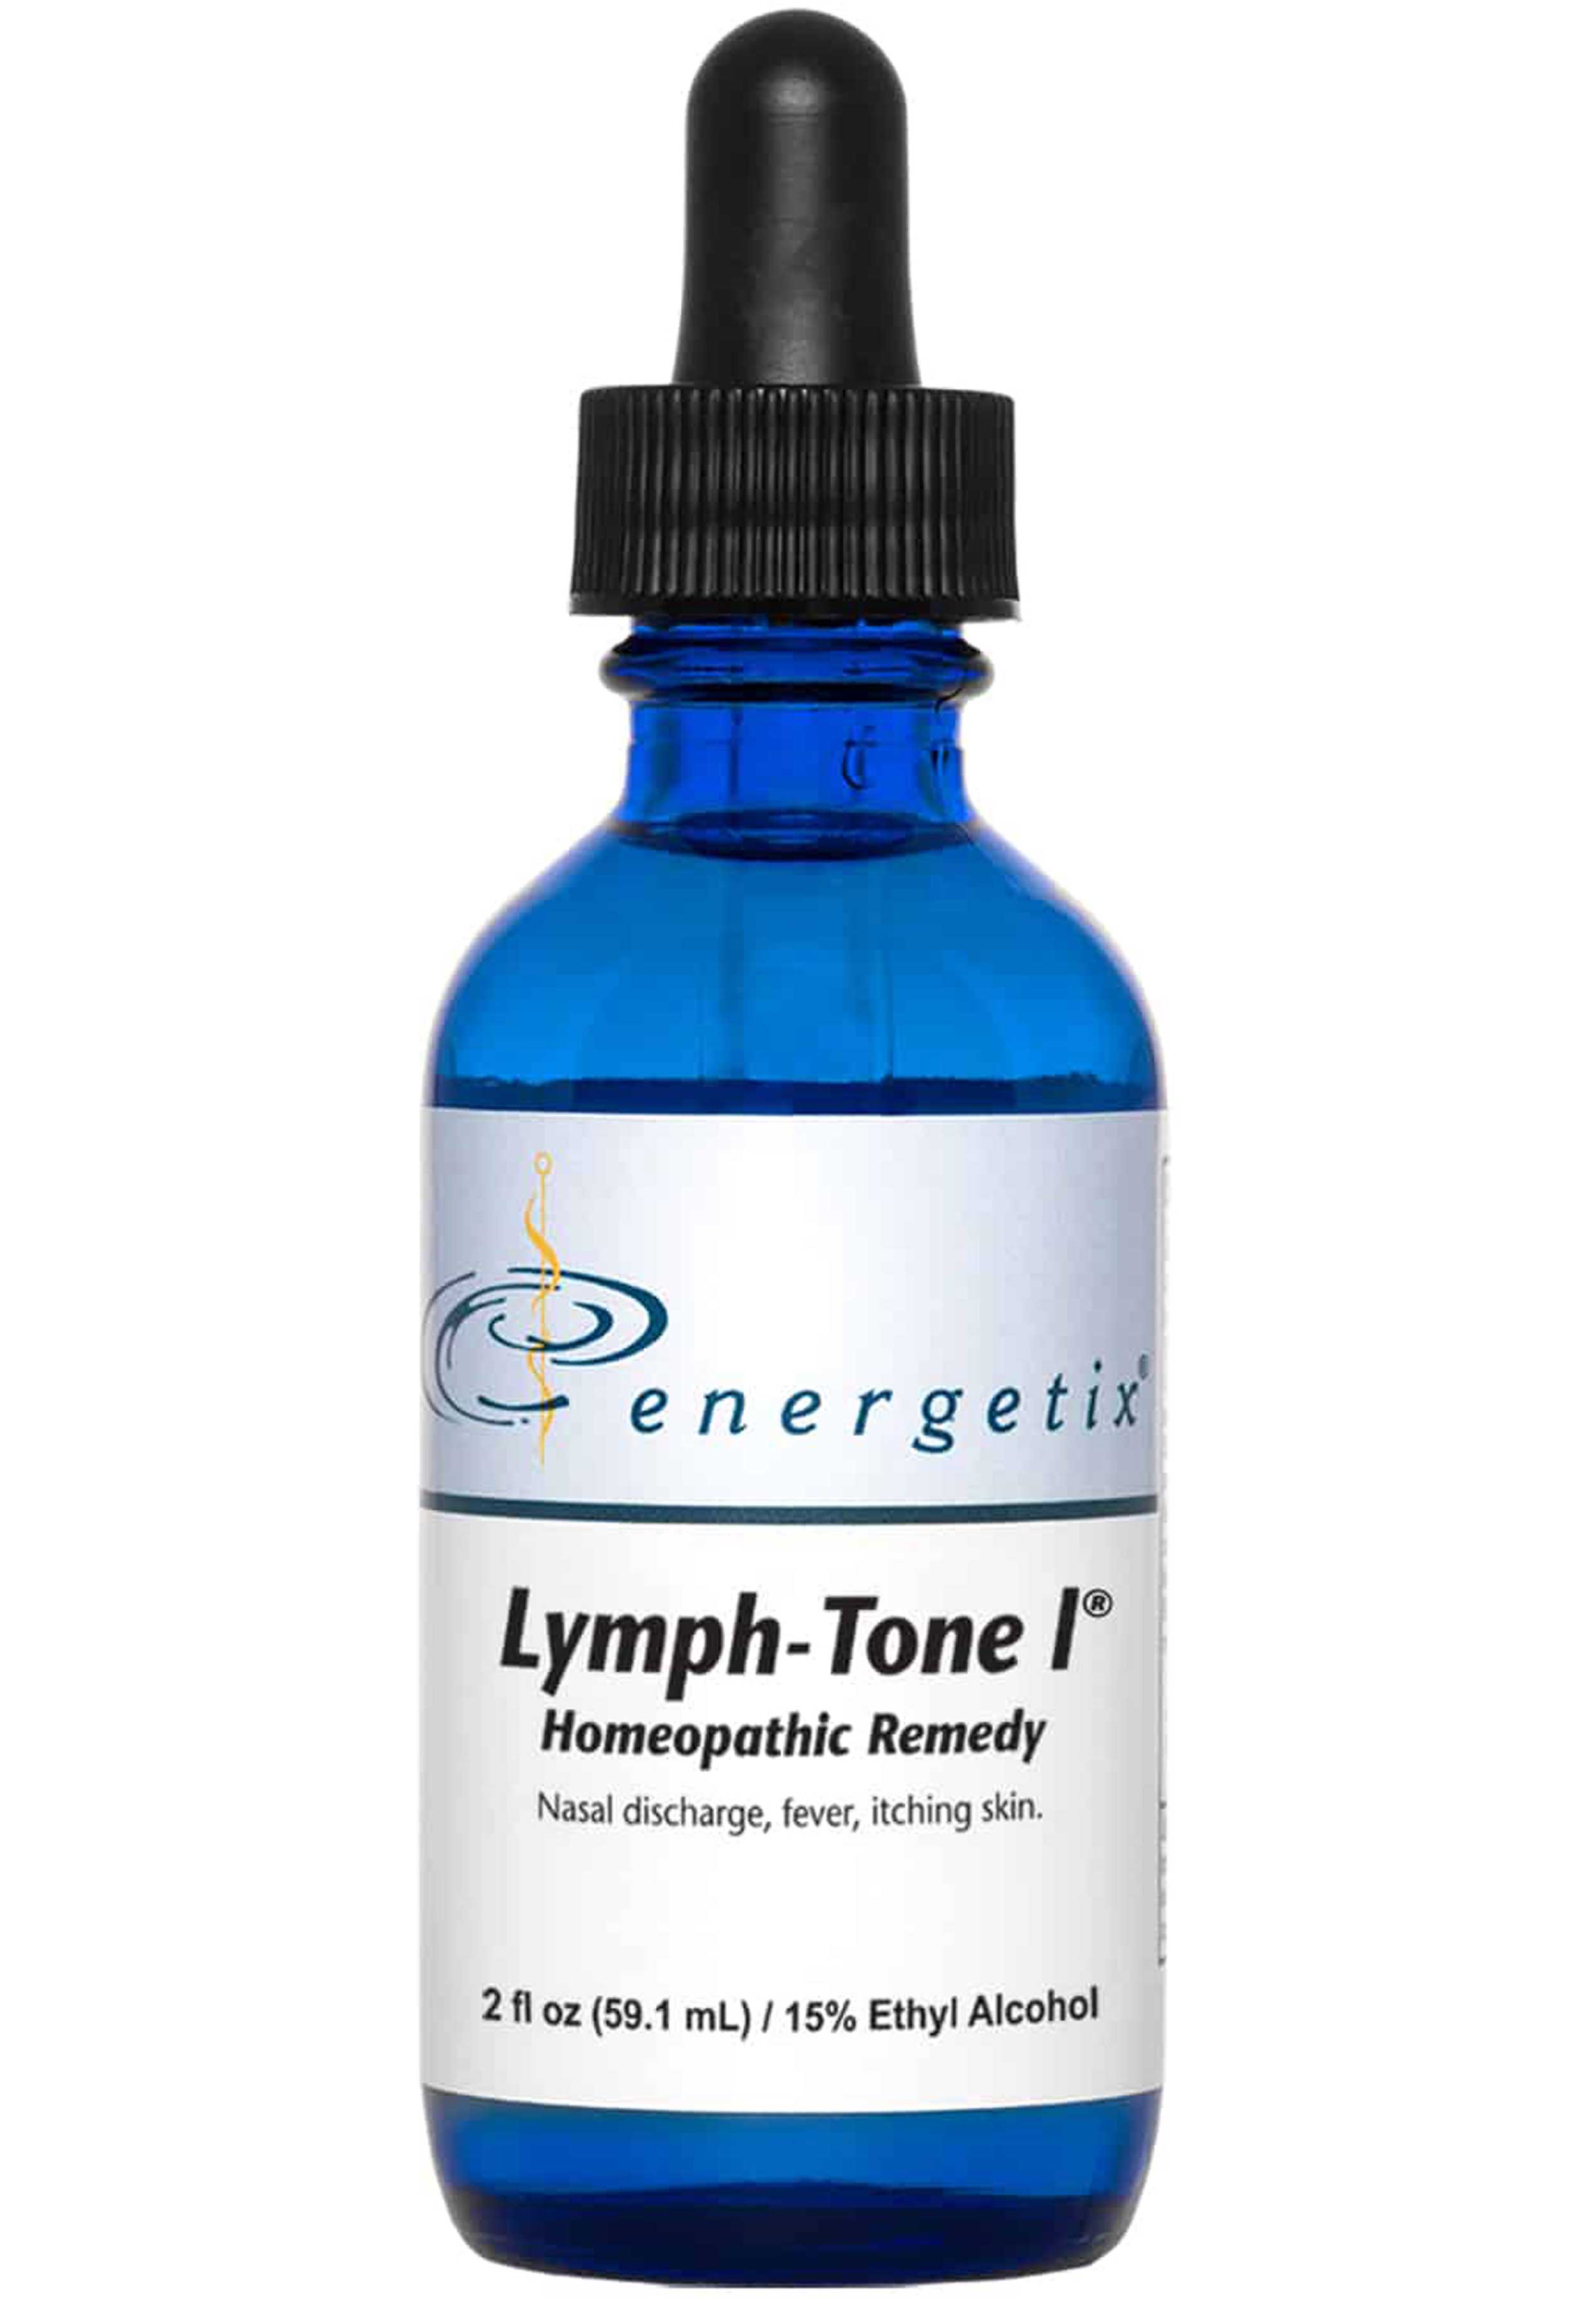 Energetix Lymph-Tone I